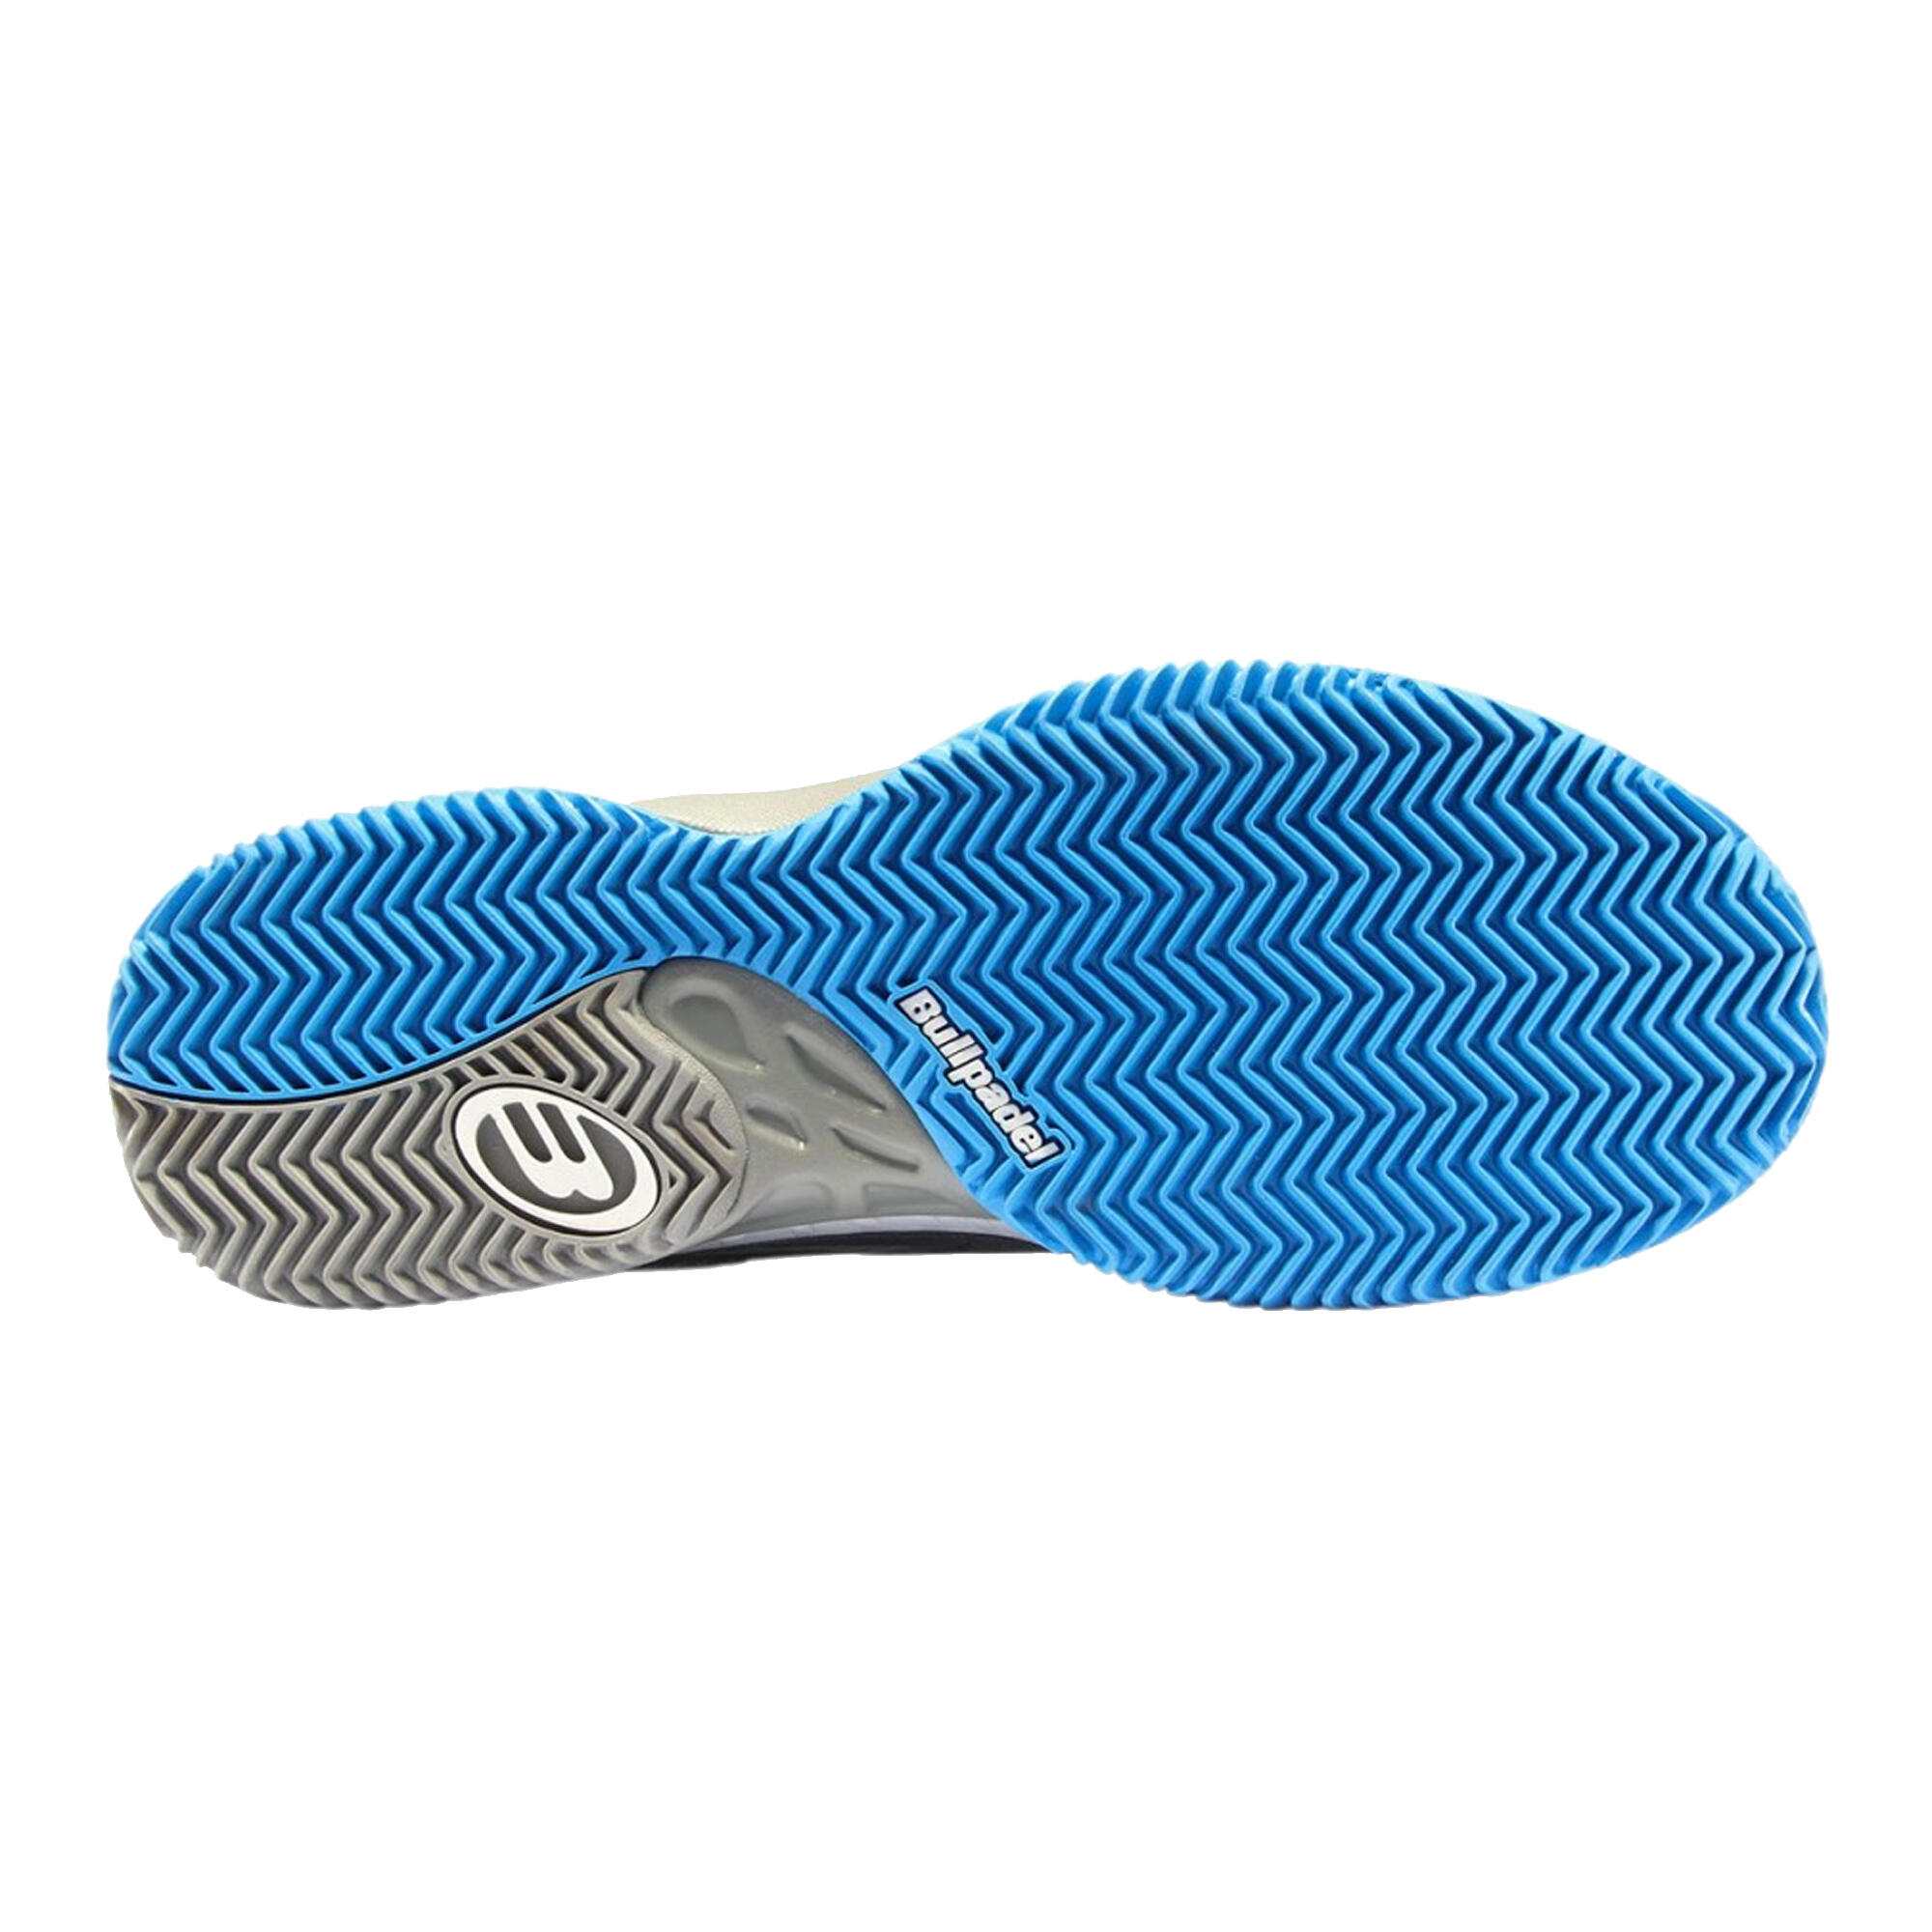 Men's Padel Shoes Beker 22 - Grey 4/4